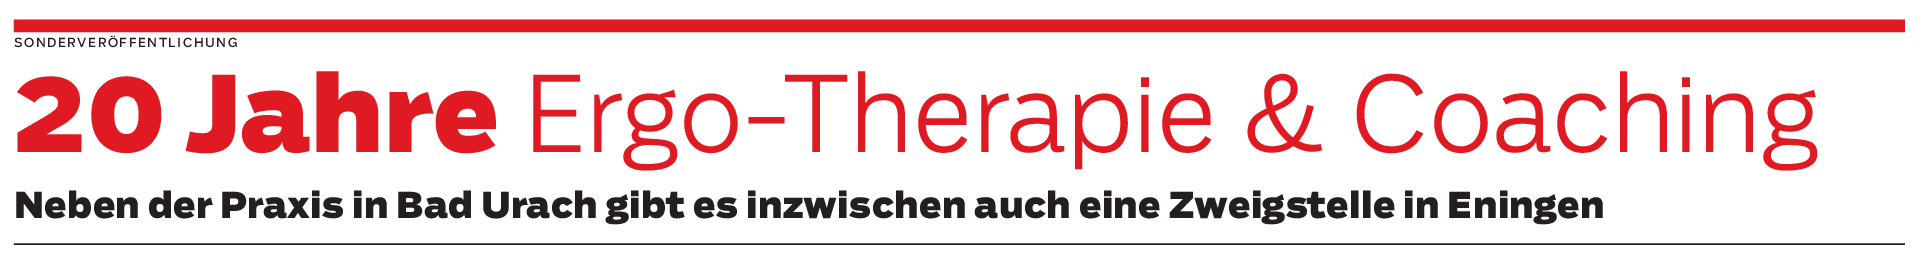 Ergo-Therapie & Coaching in Bad Urach: Einsatz für zufriedene Patienten